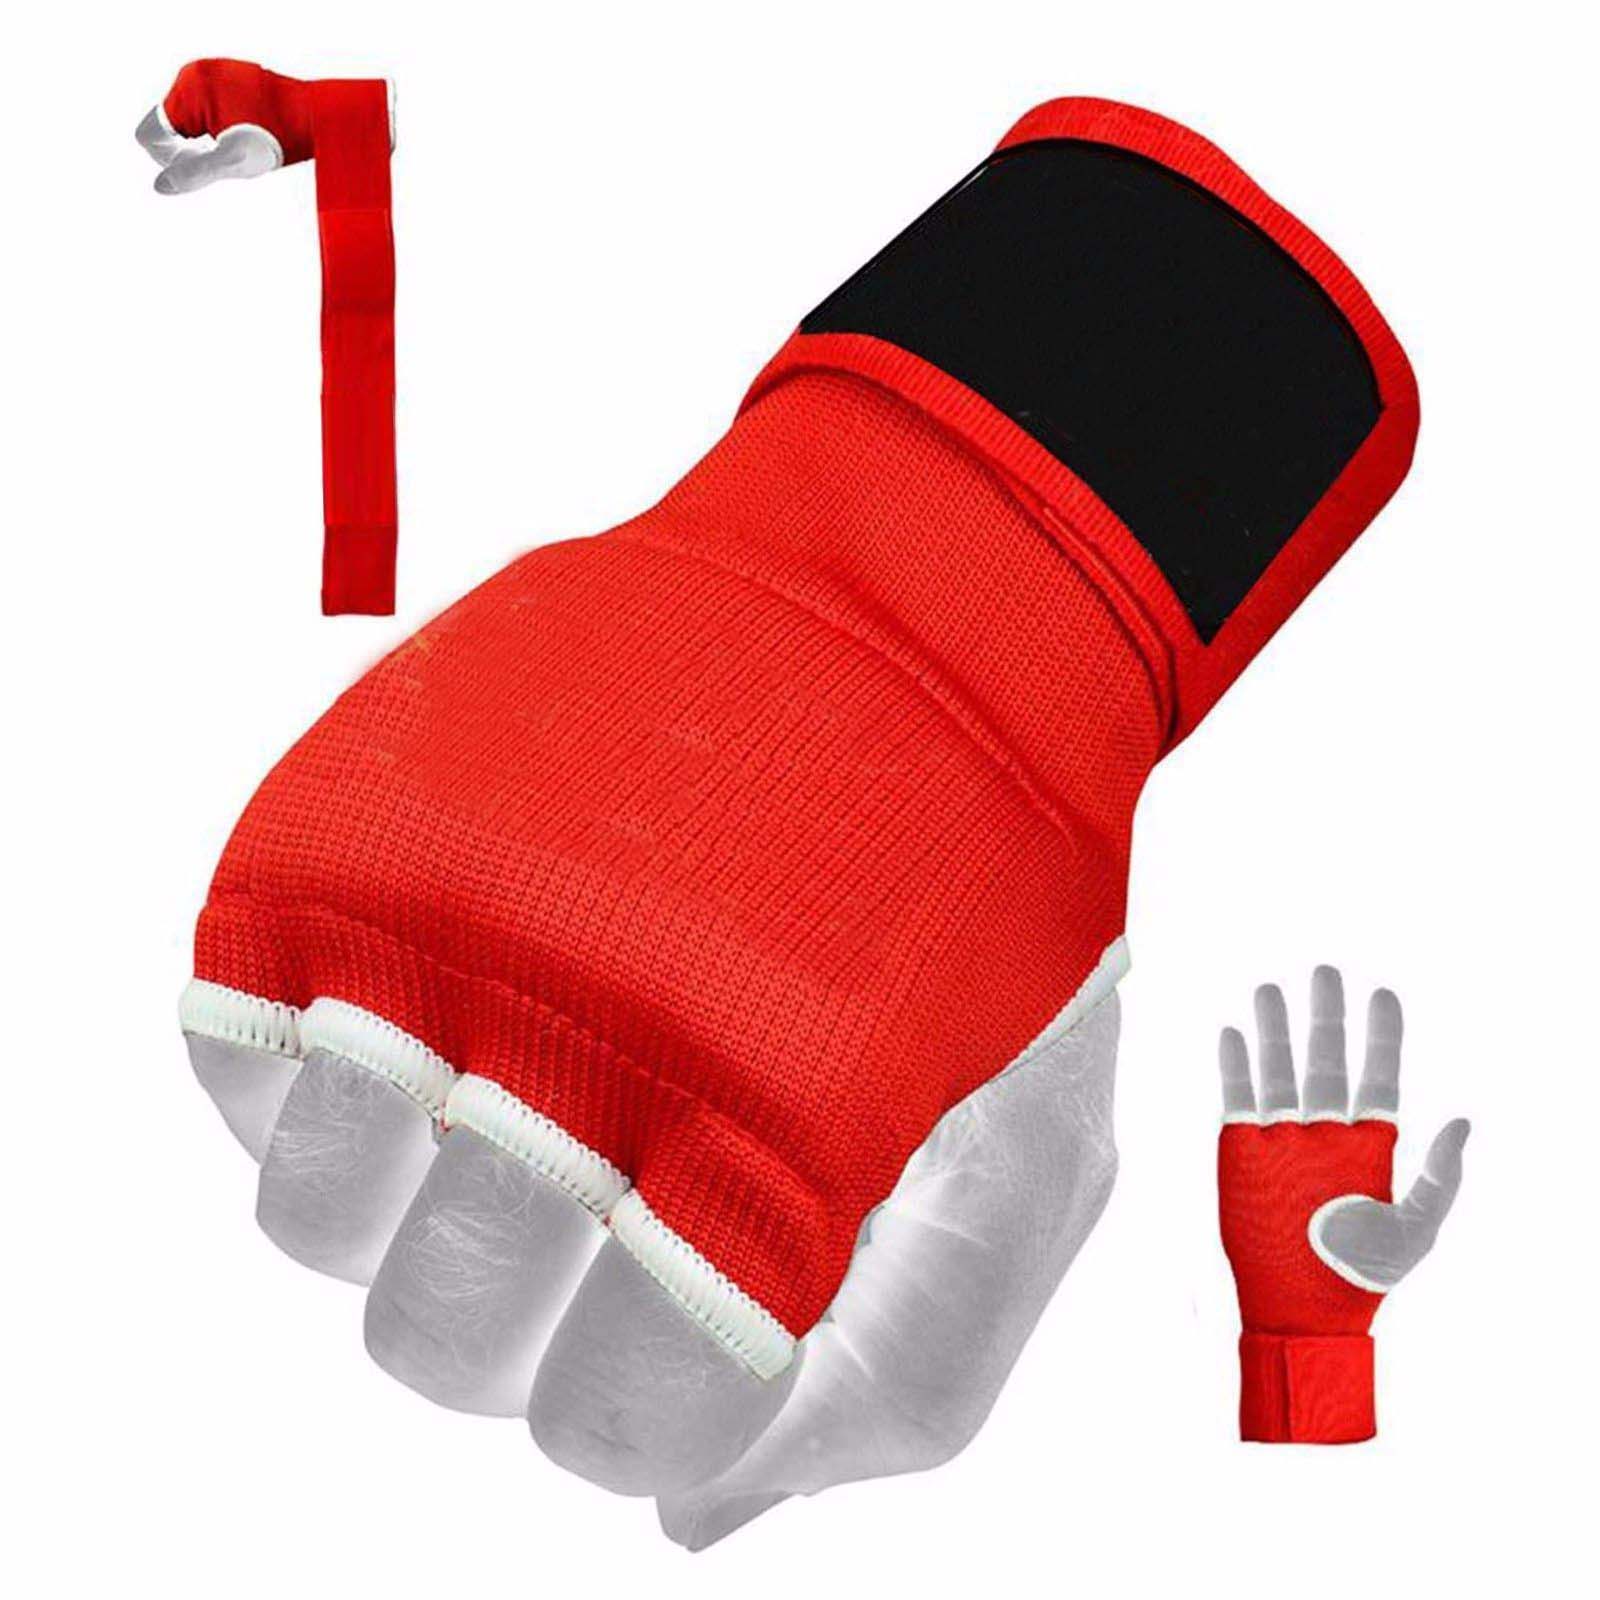  Gel Gloves